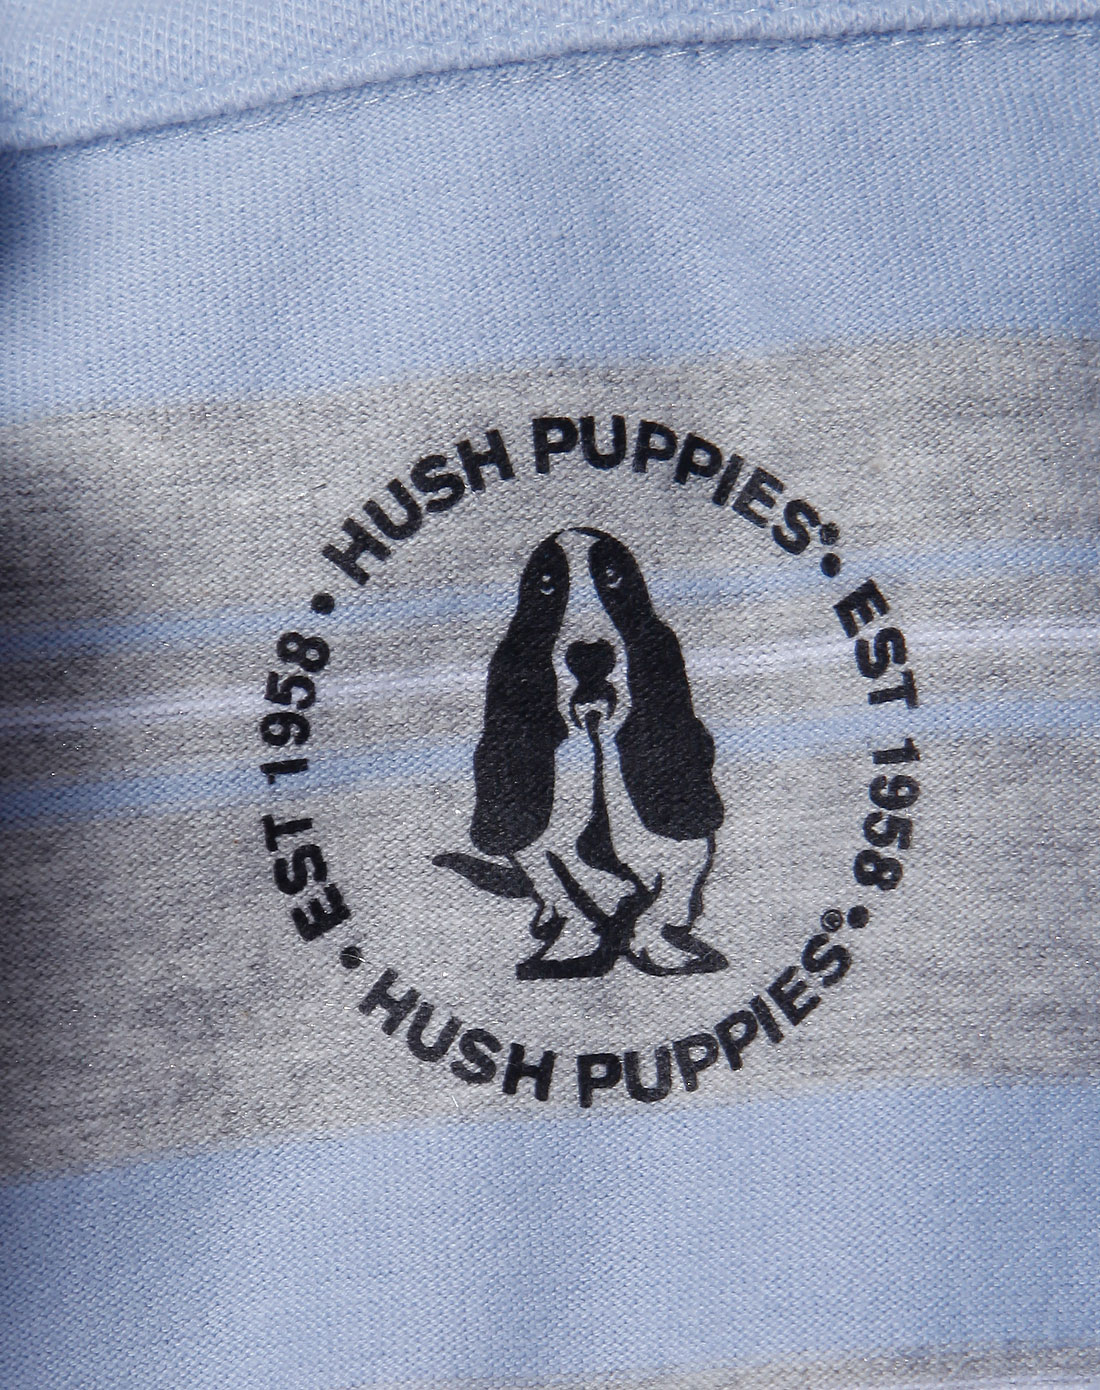 暇步士hush puppies 浅蓝色下摆绣花纯棉长袖t恤